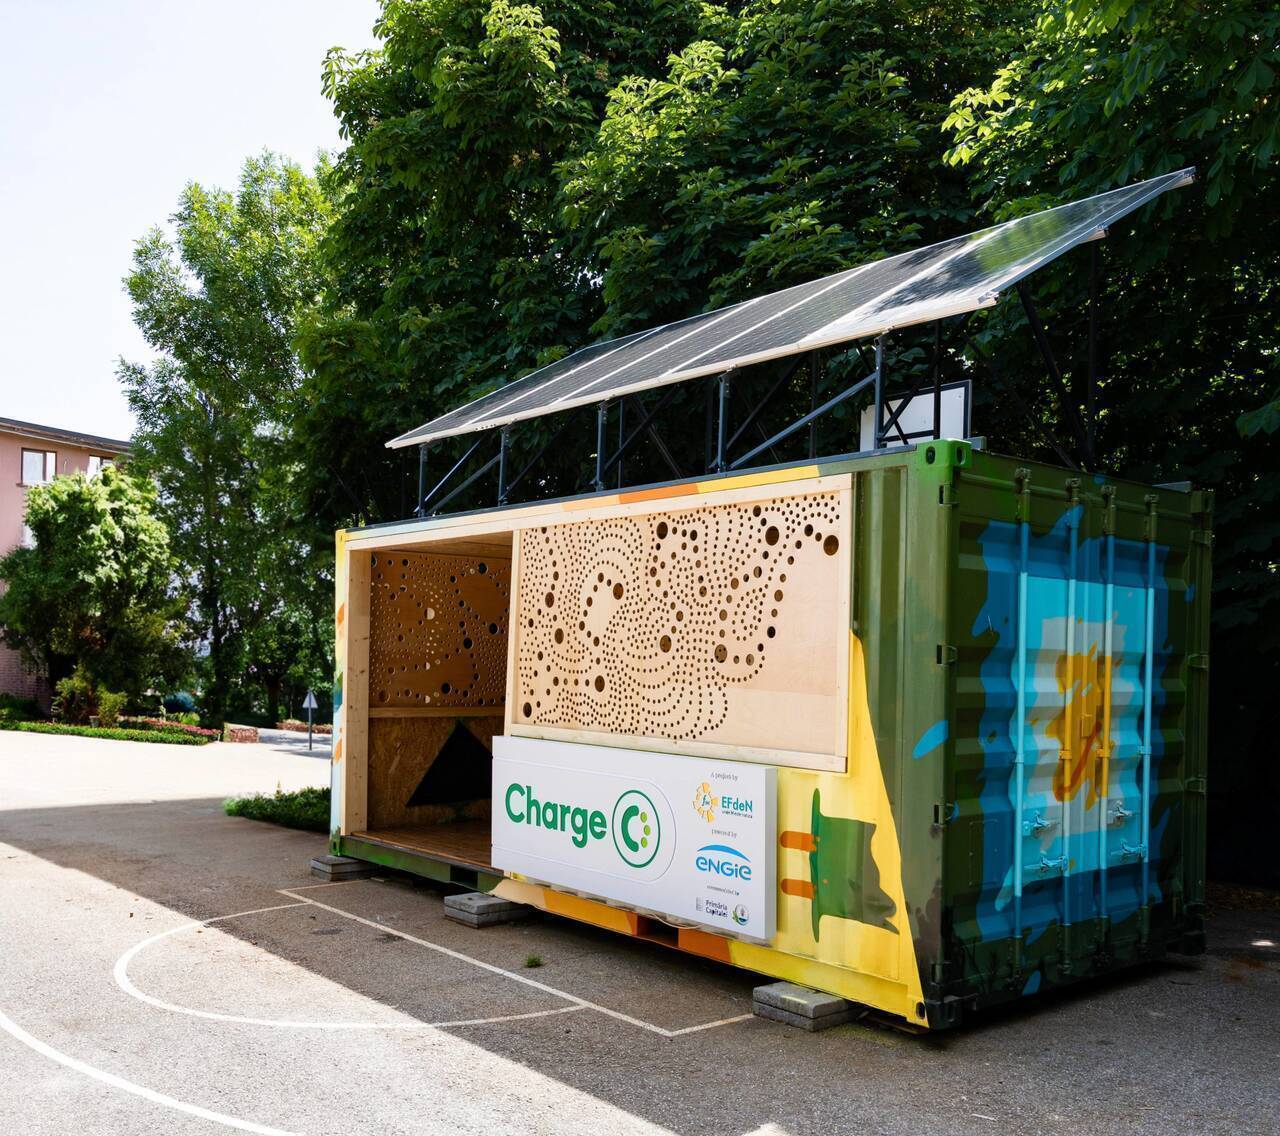 A fost lansat rCharge, un prototip de stație de încărcare pentru trotinete și biciclete electrice cu energie verde